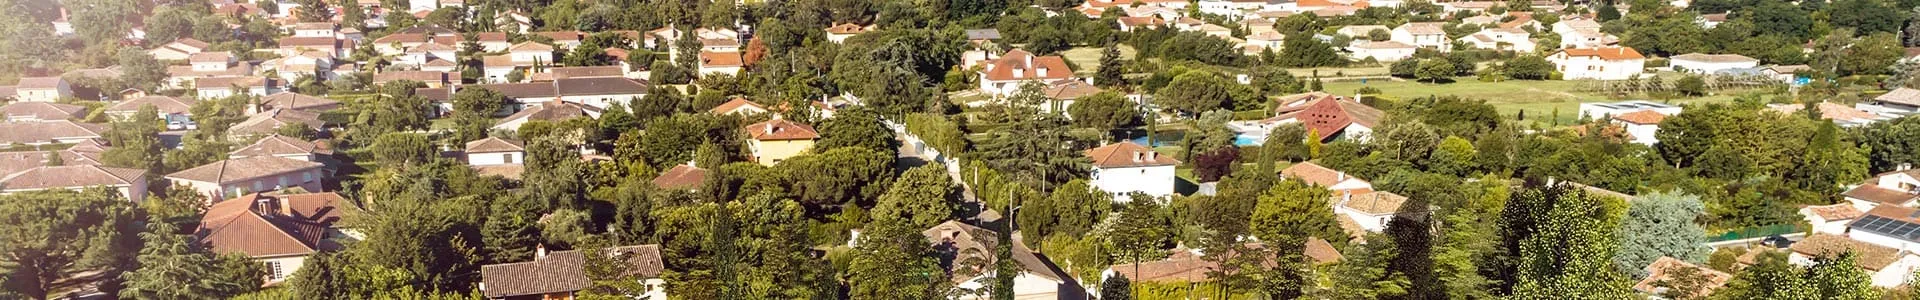 Vue aérienne du quartier de la résidence Côté Saint-Simon